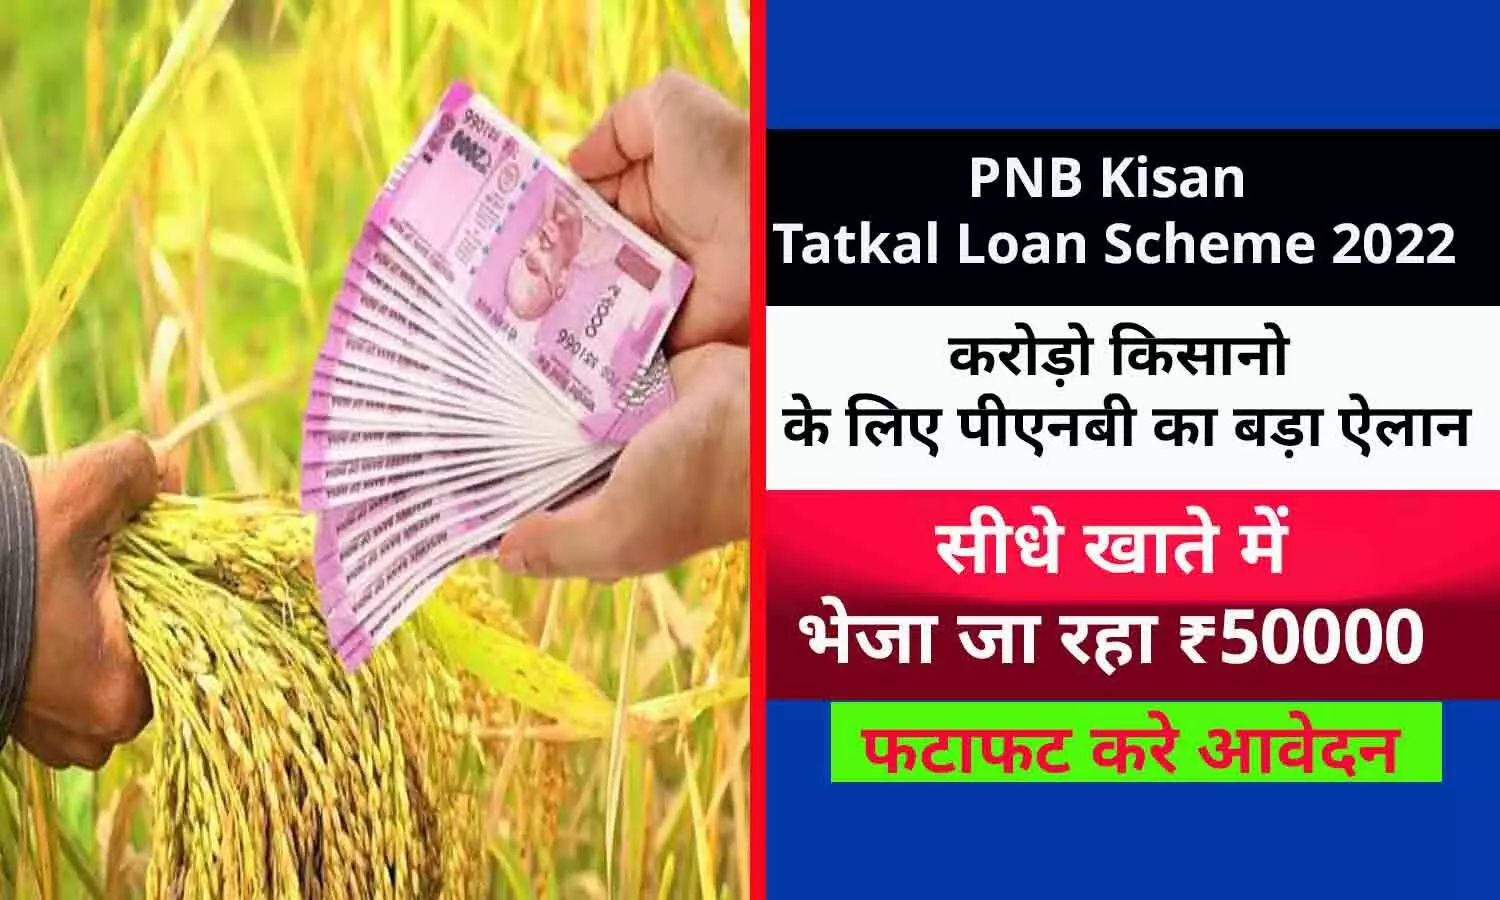 PNB Kisan Tatkal Loan Scheme 2022: खुशखबरी! करोड़ो किसानो के लिए पीएनबी का बड़ा ऐलान, सीधे खाते में दे रहा ₹50000, फटाफट करे आवेदन